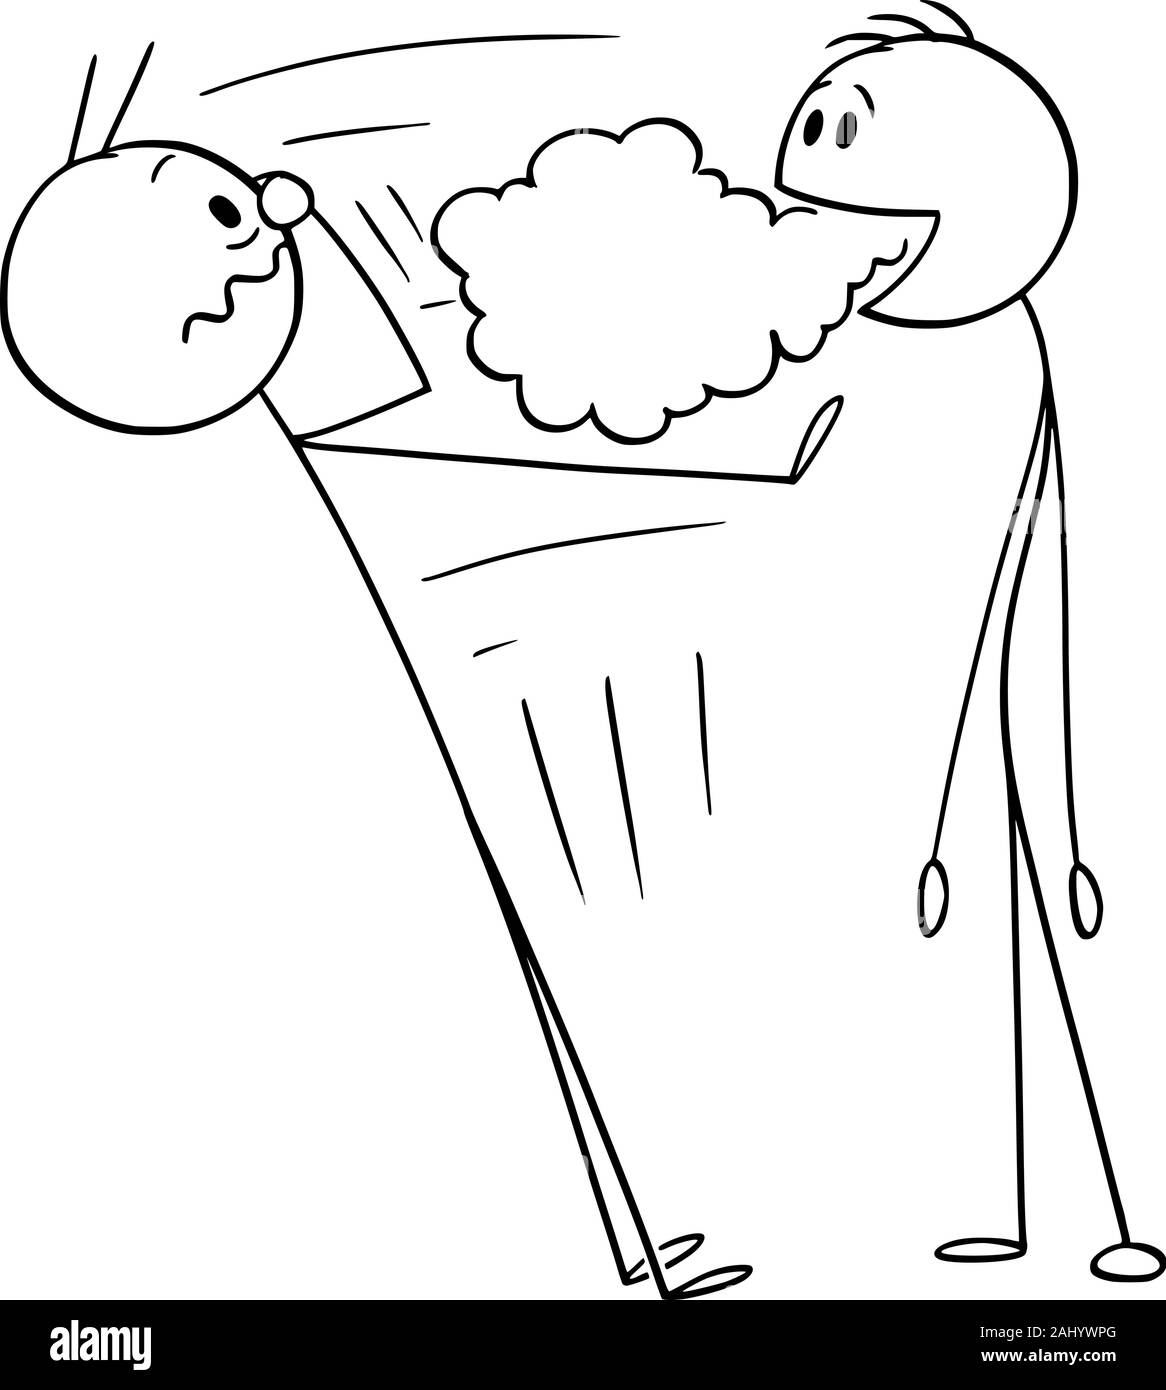 Vektor cartoon Strichmännchen Zeichnen konzeptionelle Darstellung der Mann mit schlechtem Atem, schlechter Geruch kommt aus seinem Mund. Stock Vektor